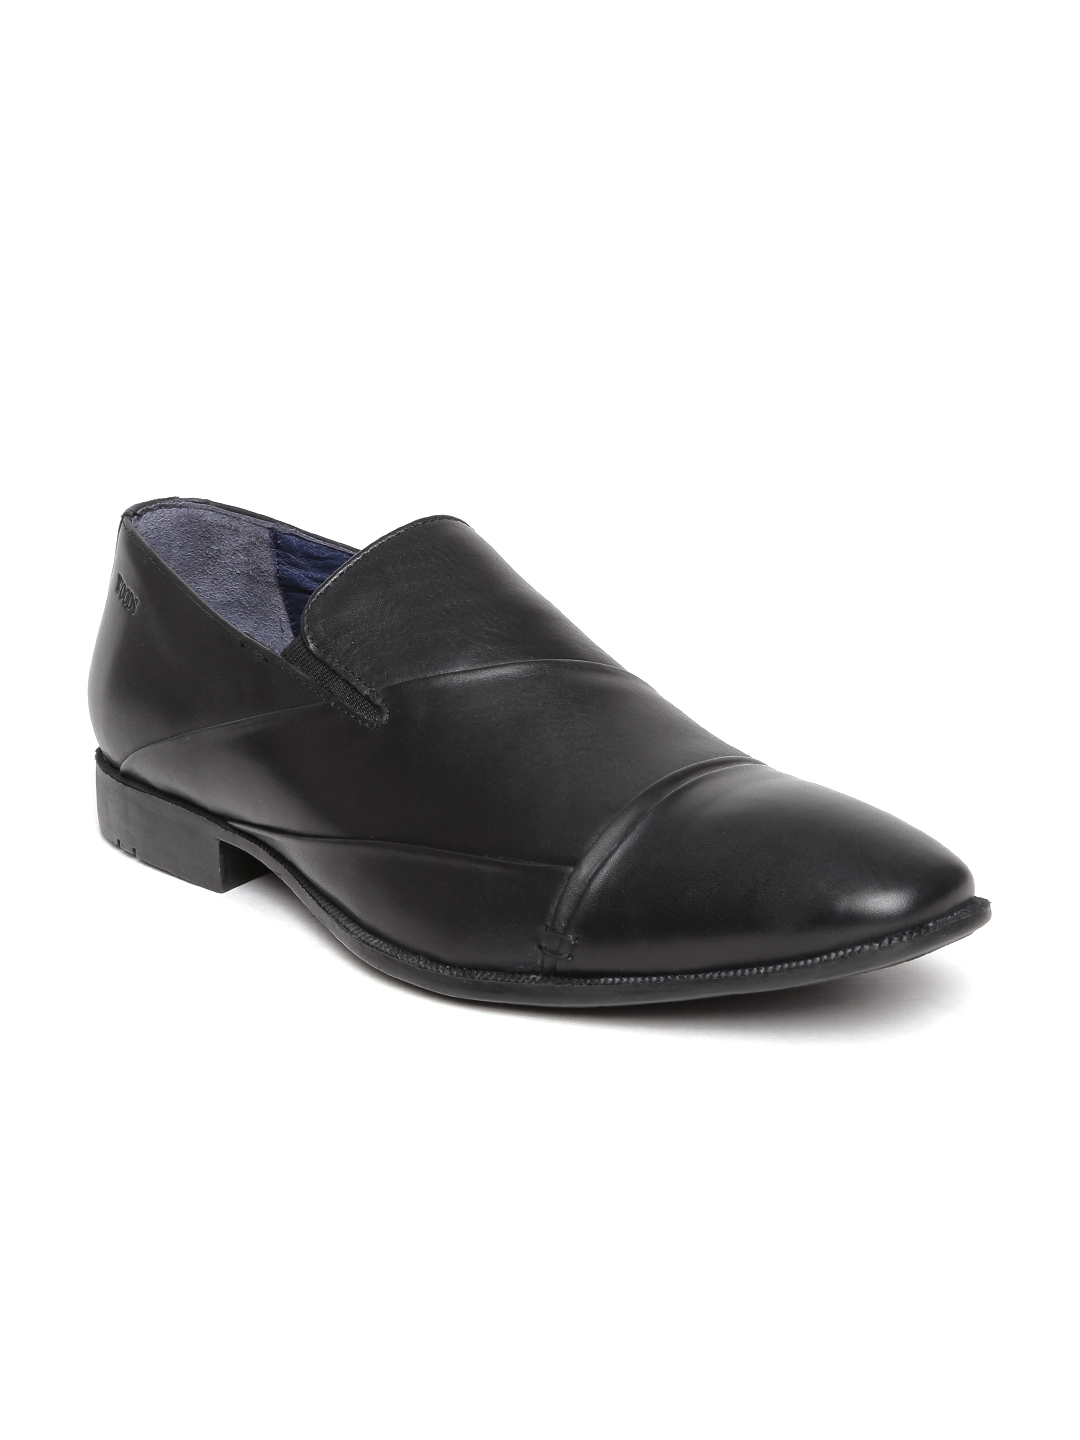 Buy Woods Men Black Leather Semiformal Shoes - Formal Shoes for Men ...